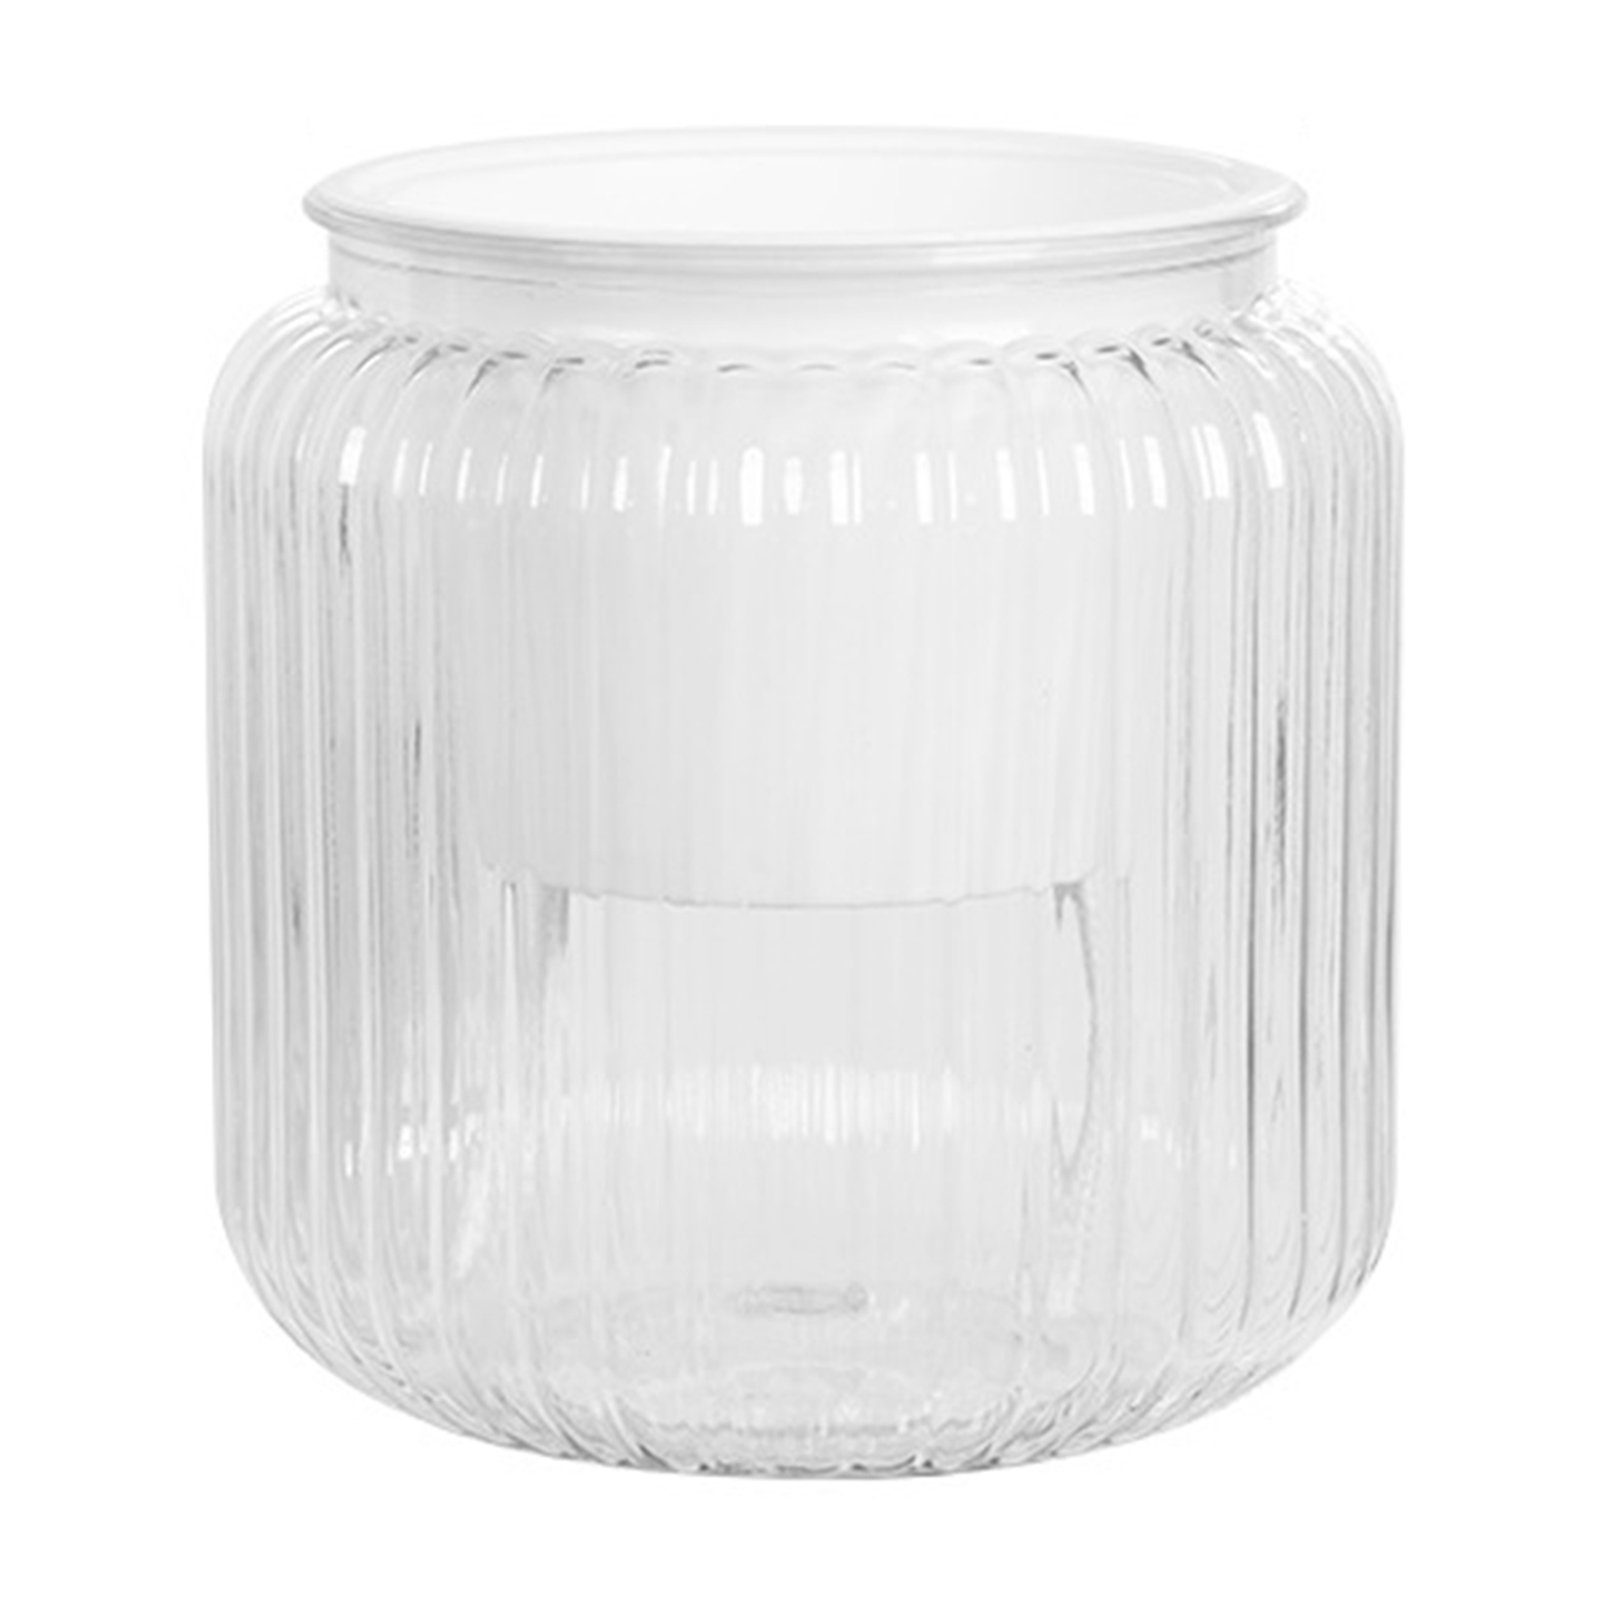 Blusmart Blumentopf Kunststoff-Blumentopf Mit Großem Flaschenmunddurchmesser pure transparent